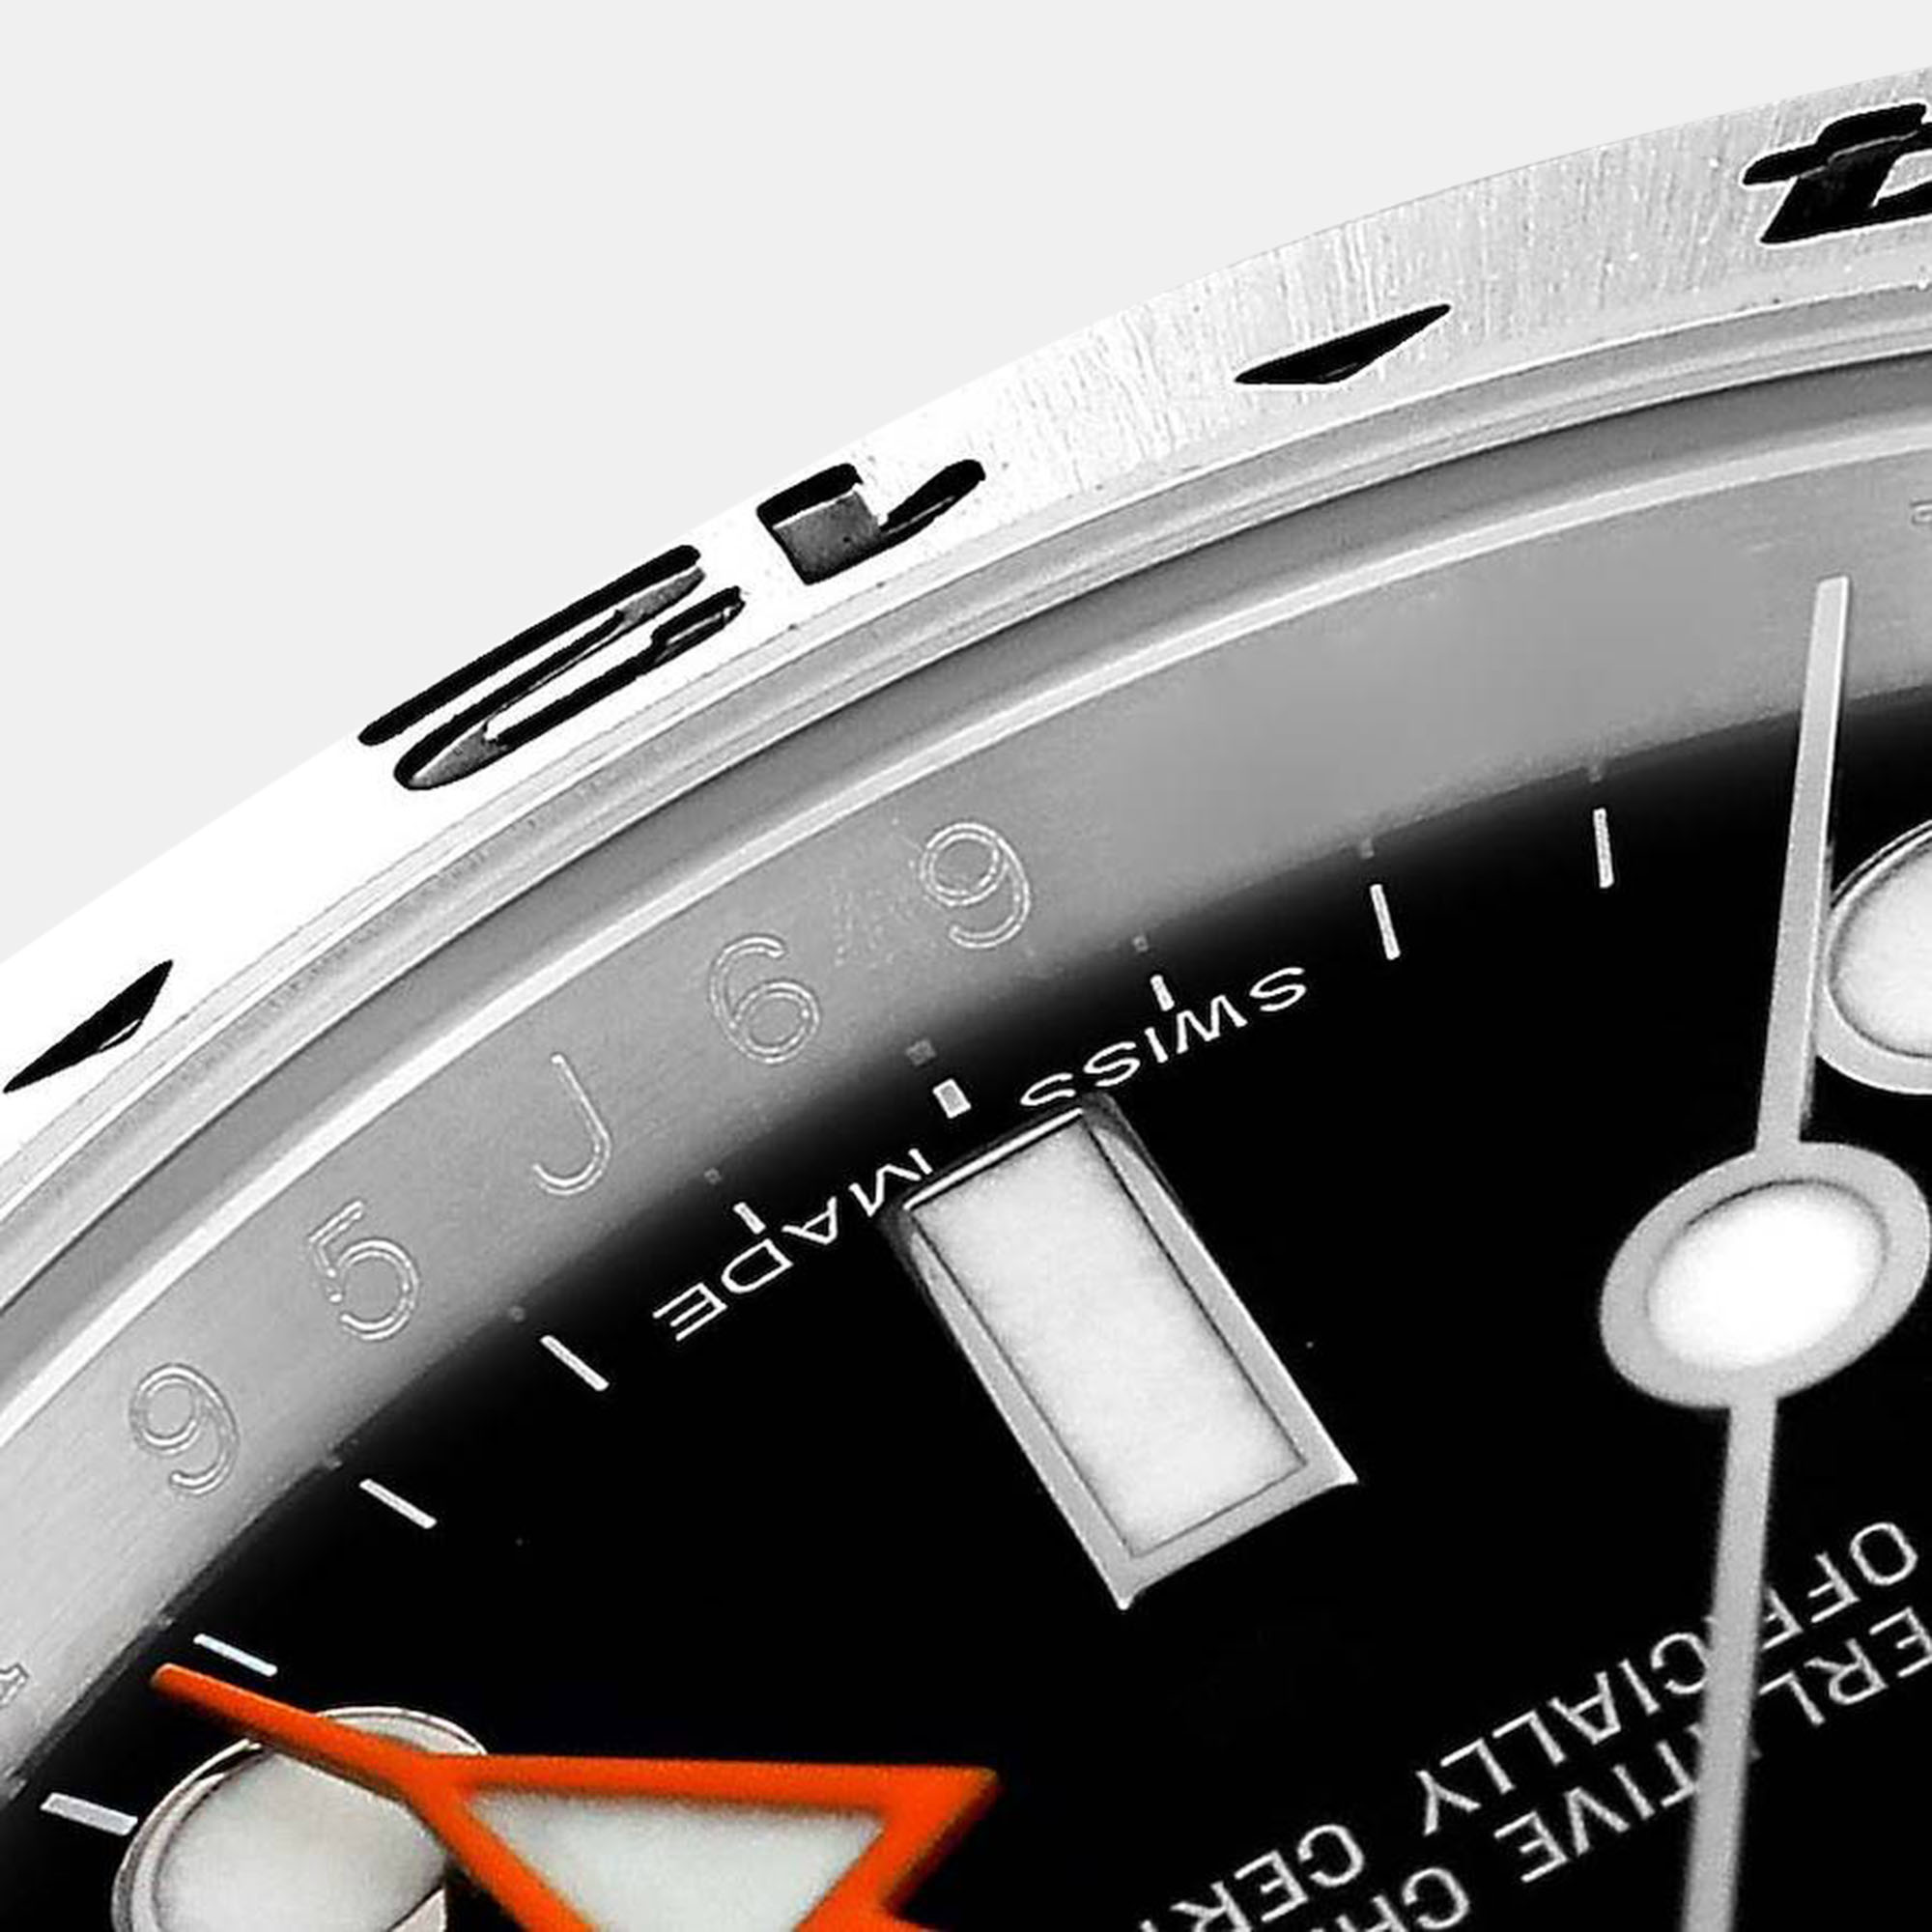 Rolex Explorer II Black Dial Orange Hand Steel Men's Watch 216570 42 Mm